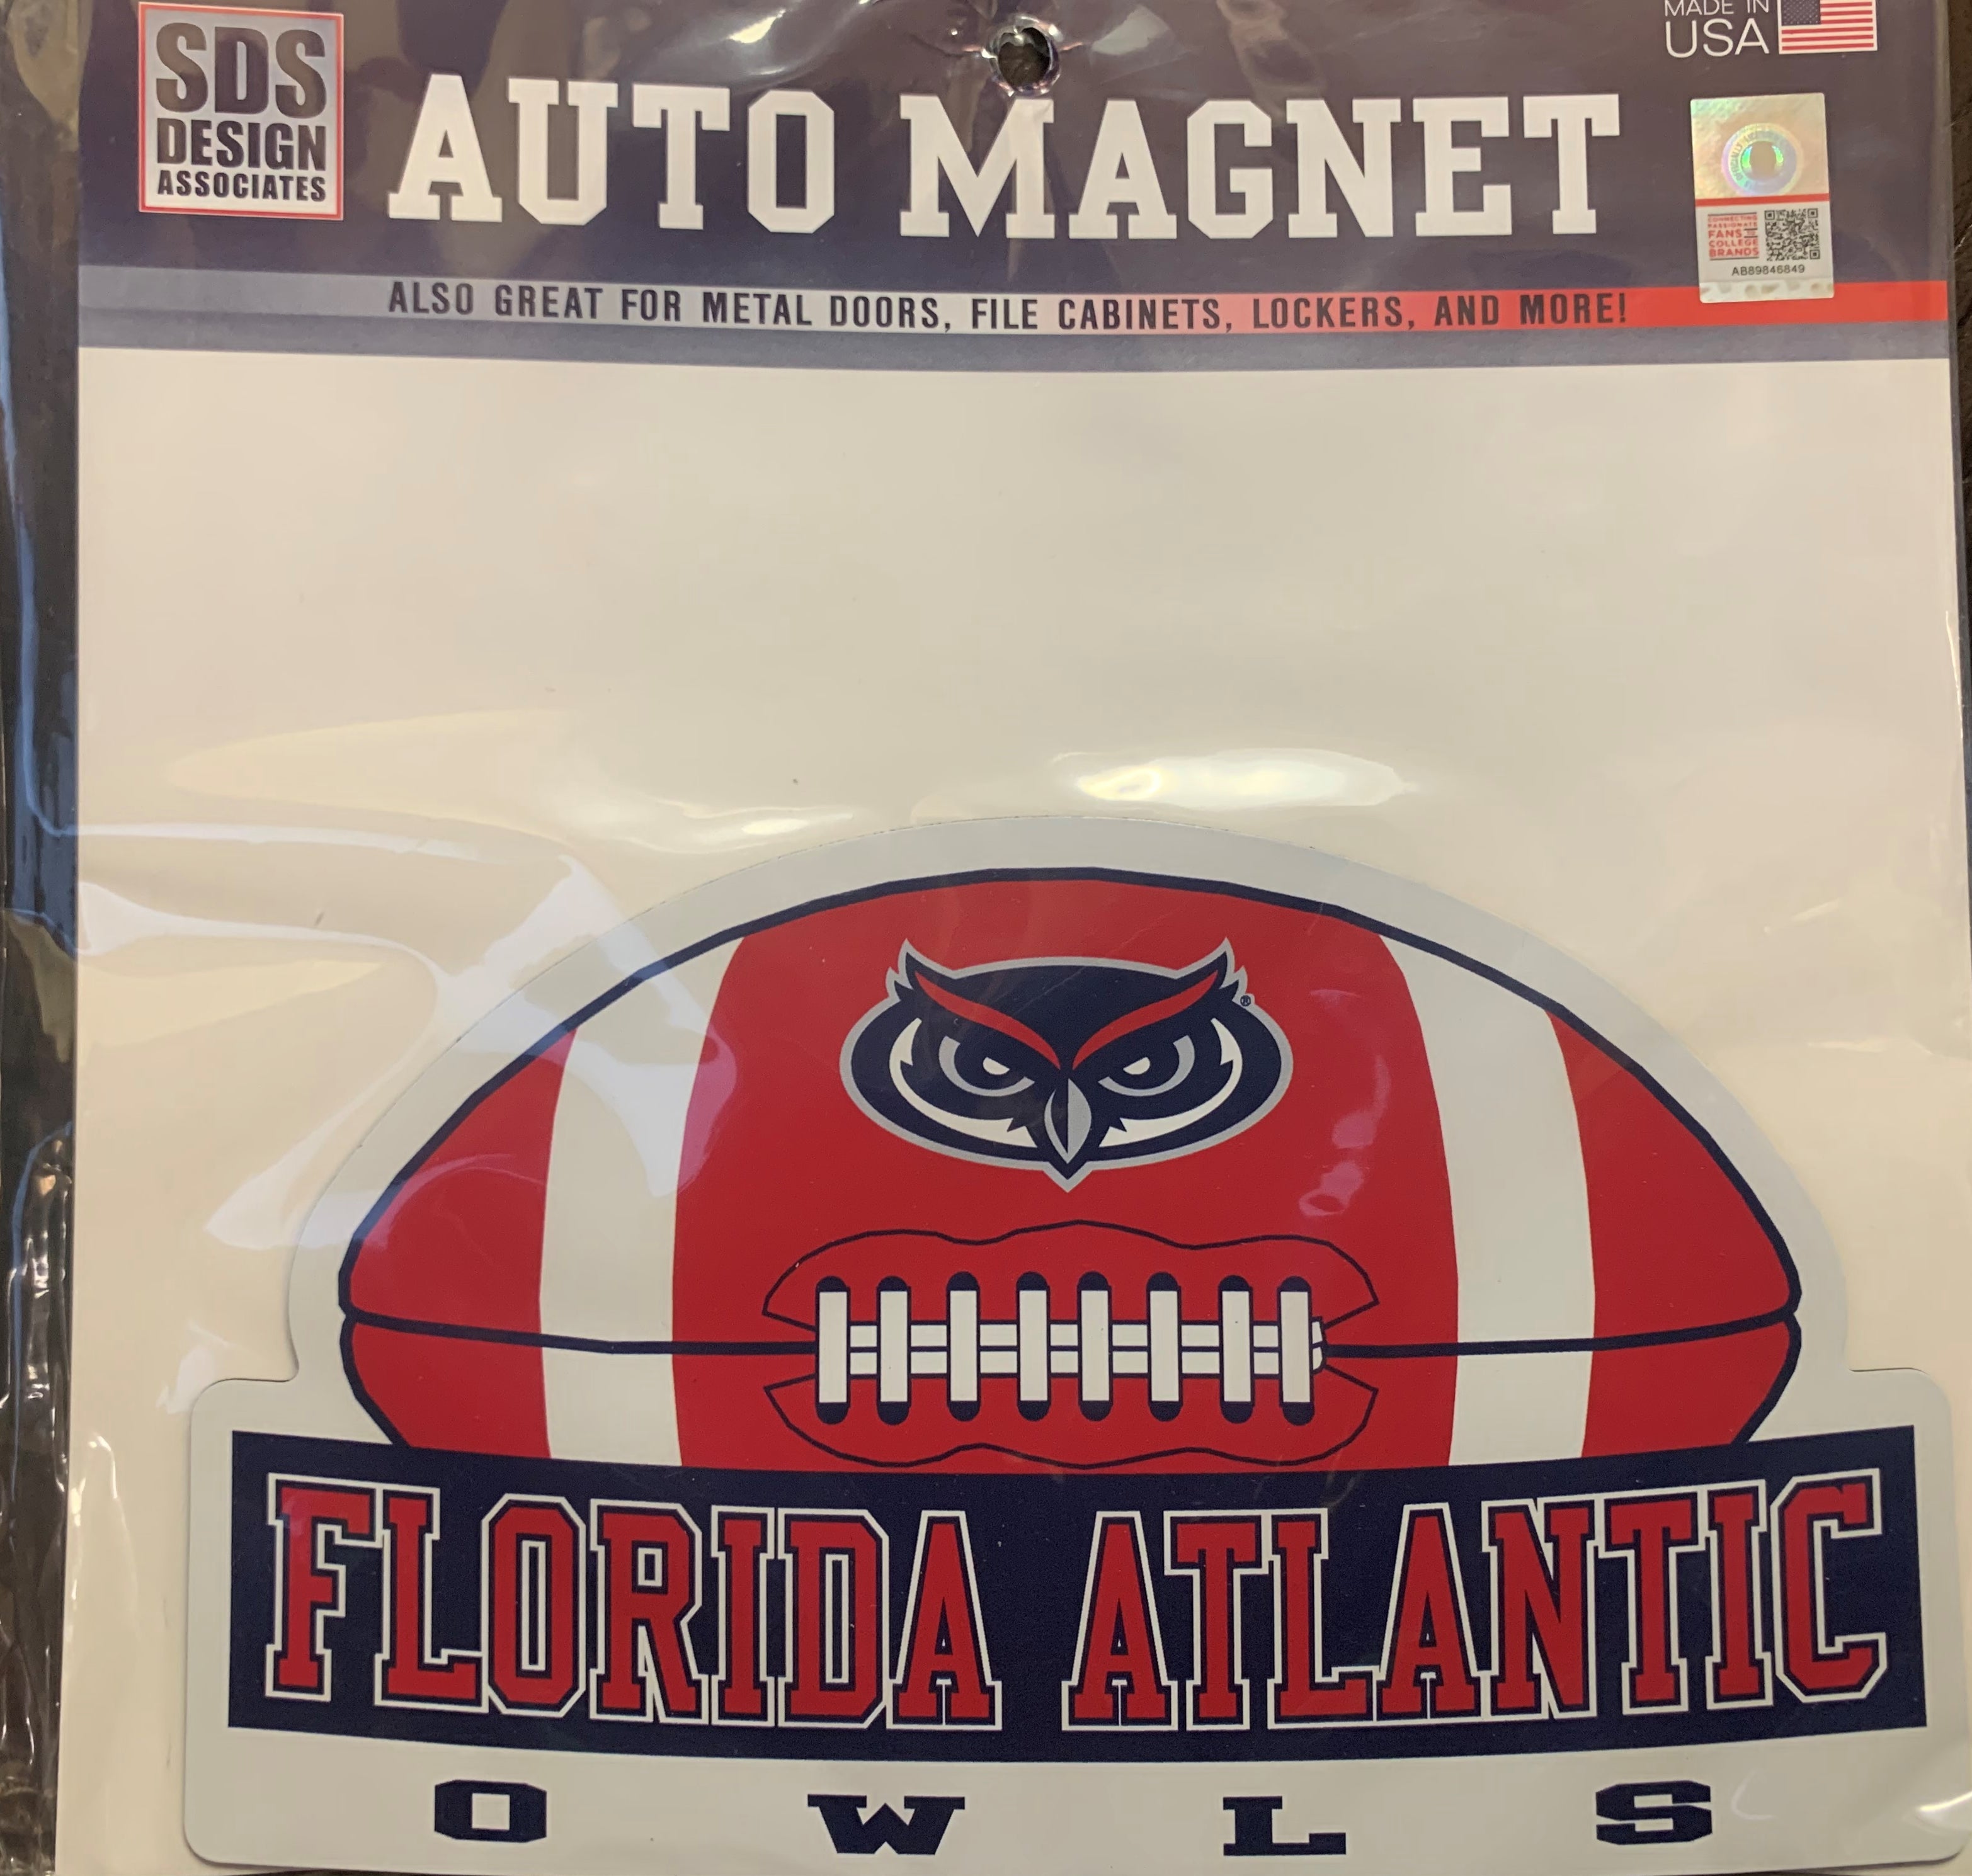 Magnet Florida Atlantic (FAU) Football - Auto – It's Owl Time